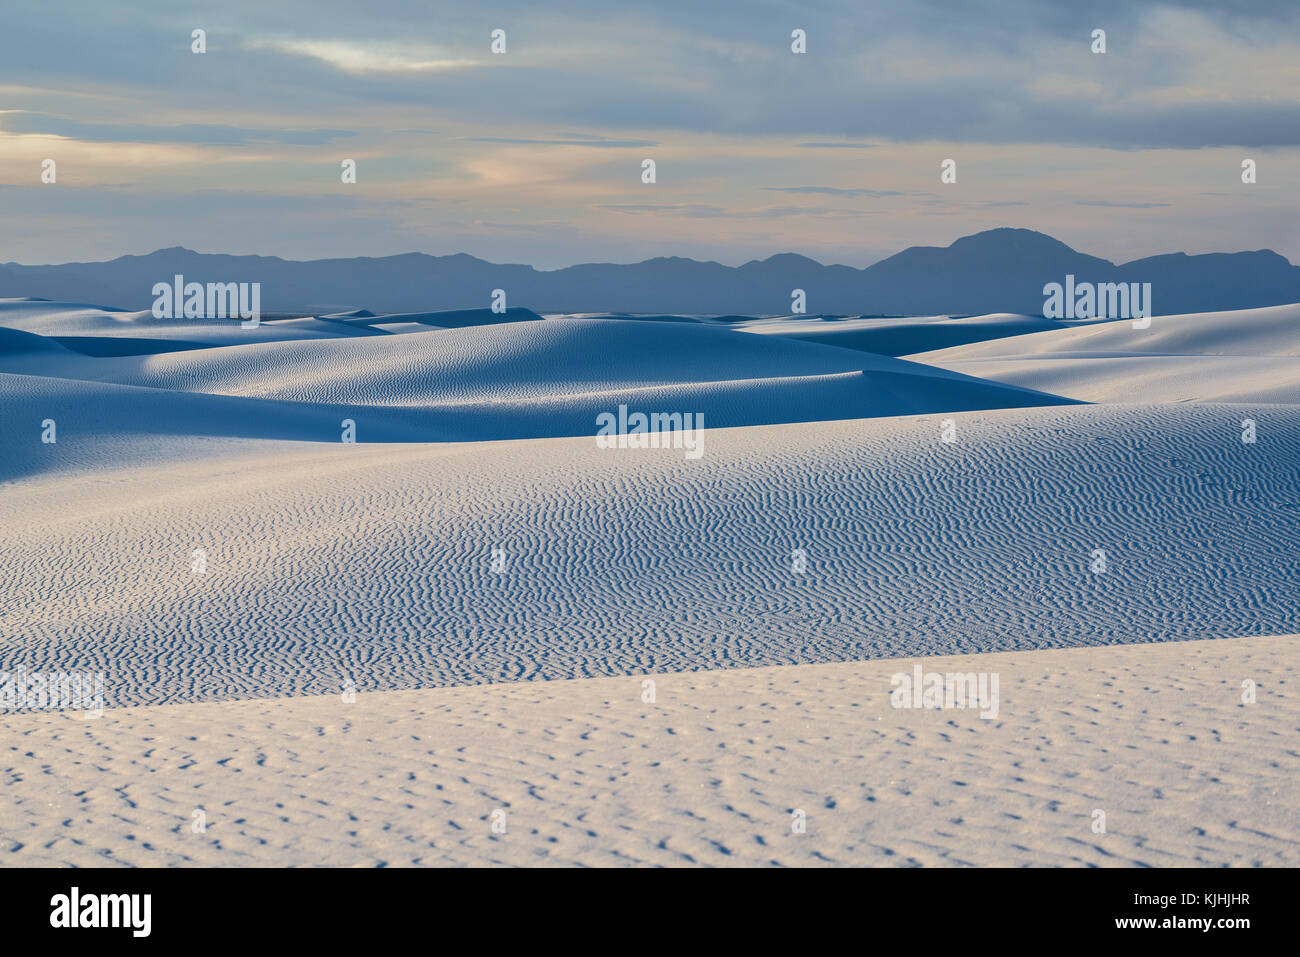 Die einzigartige und wunderschöne White Sands National Monument in New Mexico. Dieser Gips dune Feld ist die größte ihrer Art in der Welt. In Southe entfernt Stockfoto